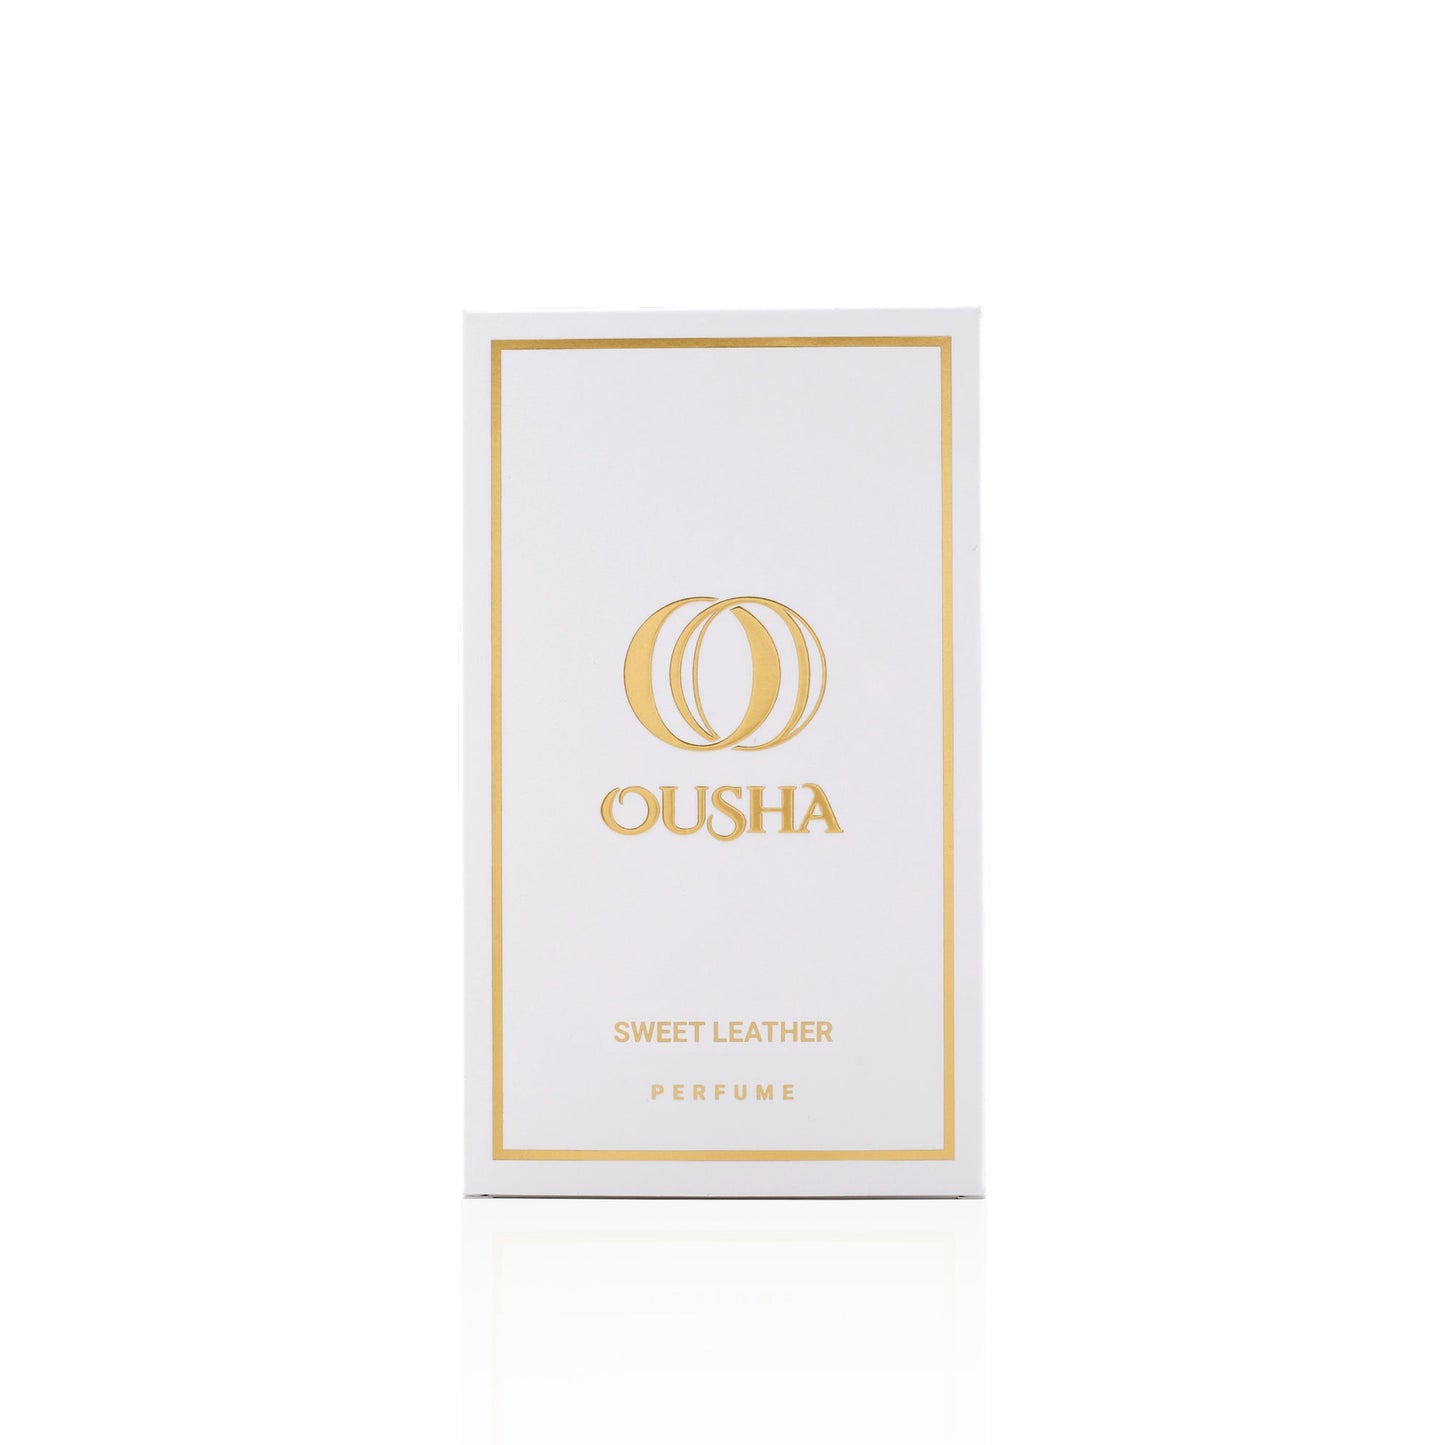 Ousha perfume - OUSHA PERFUME SWEET LEATHER 75ml